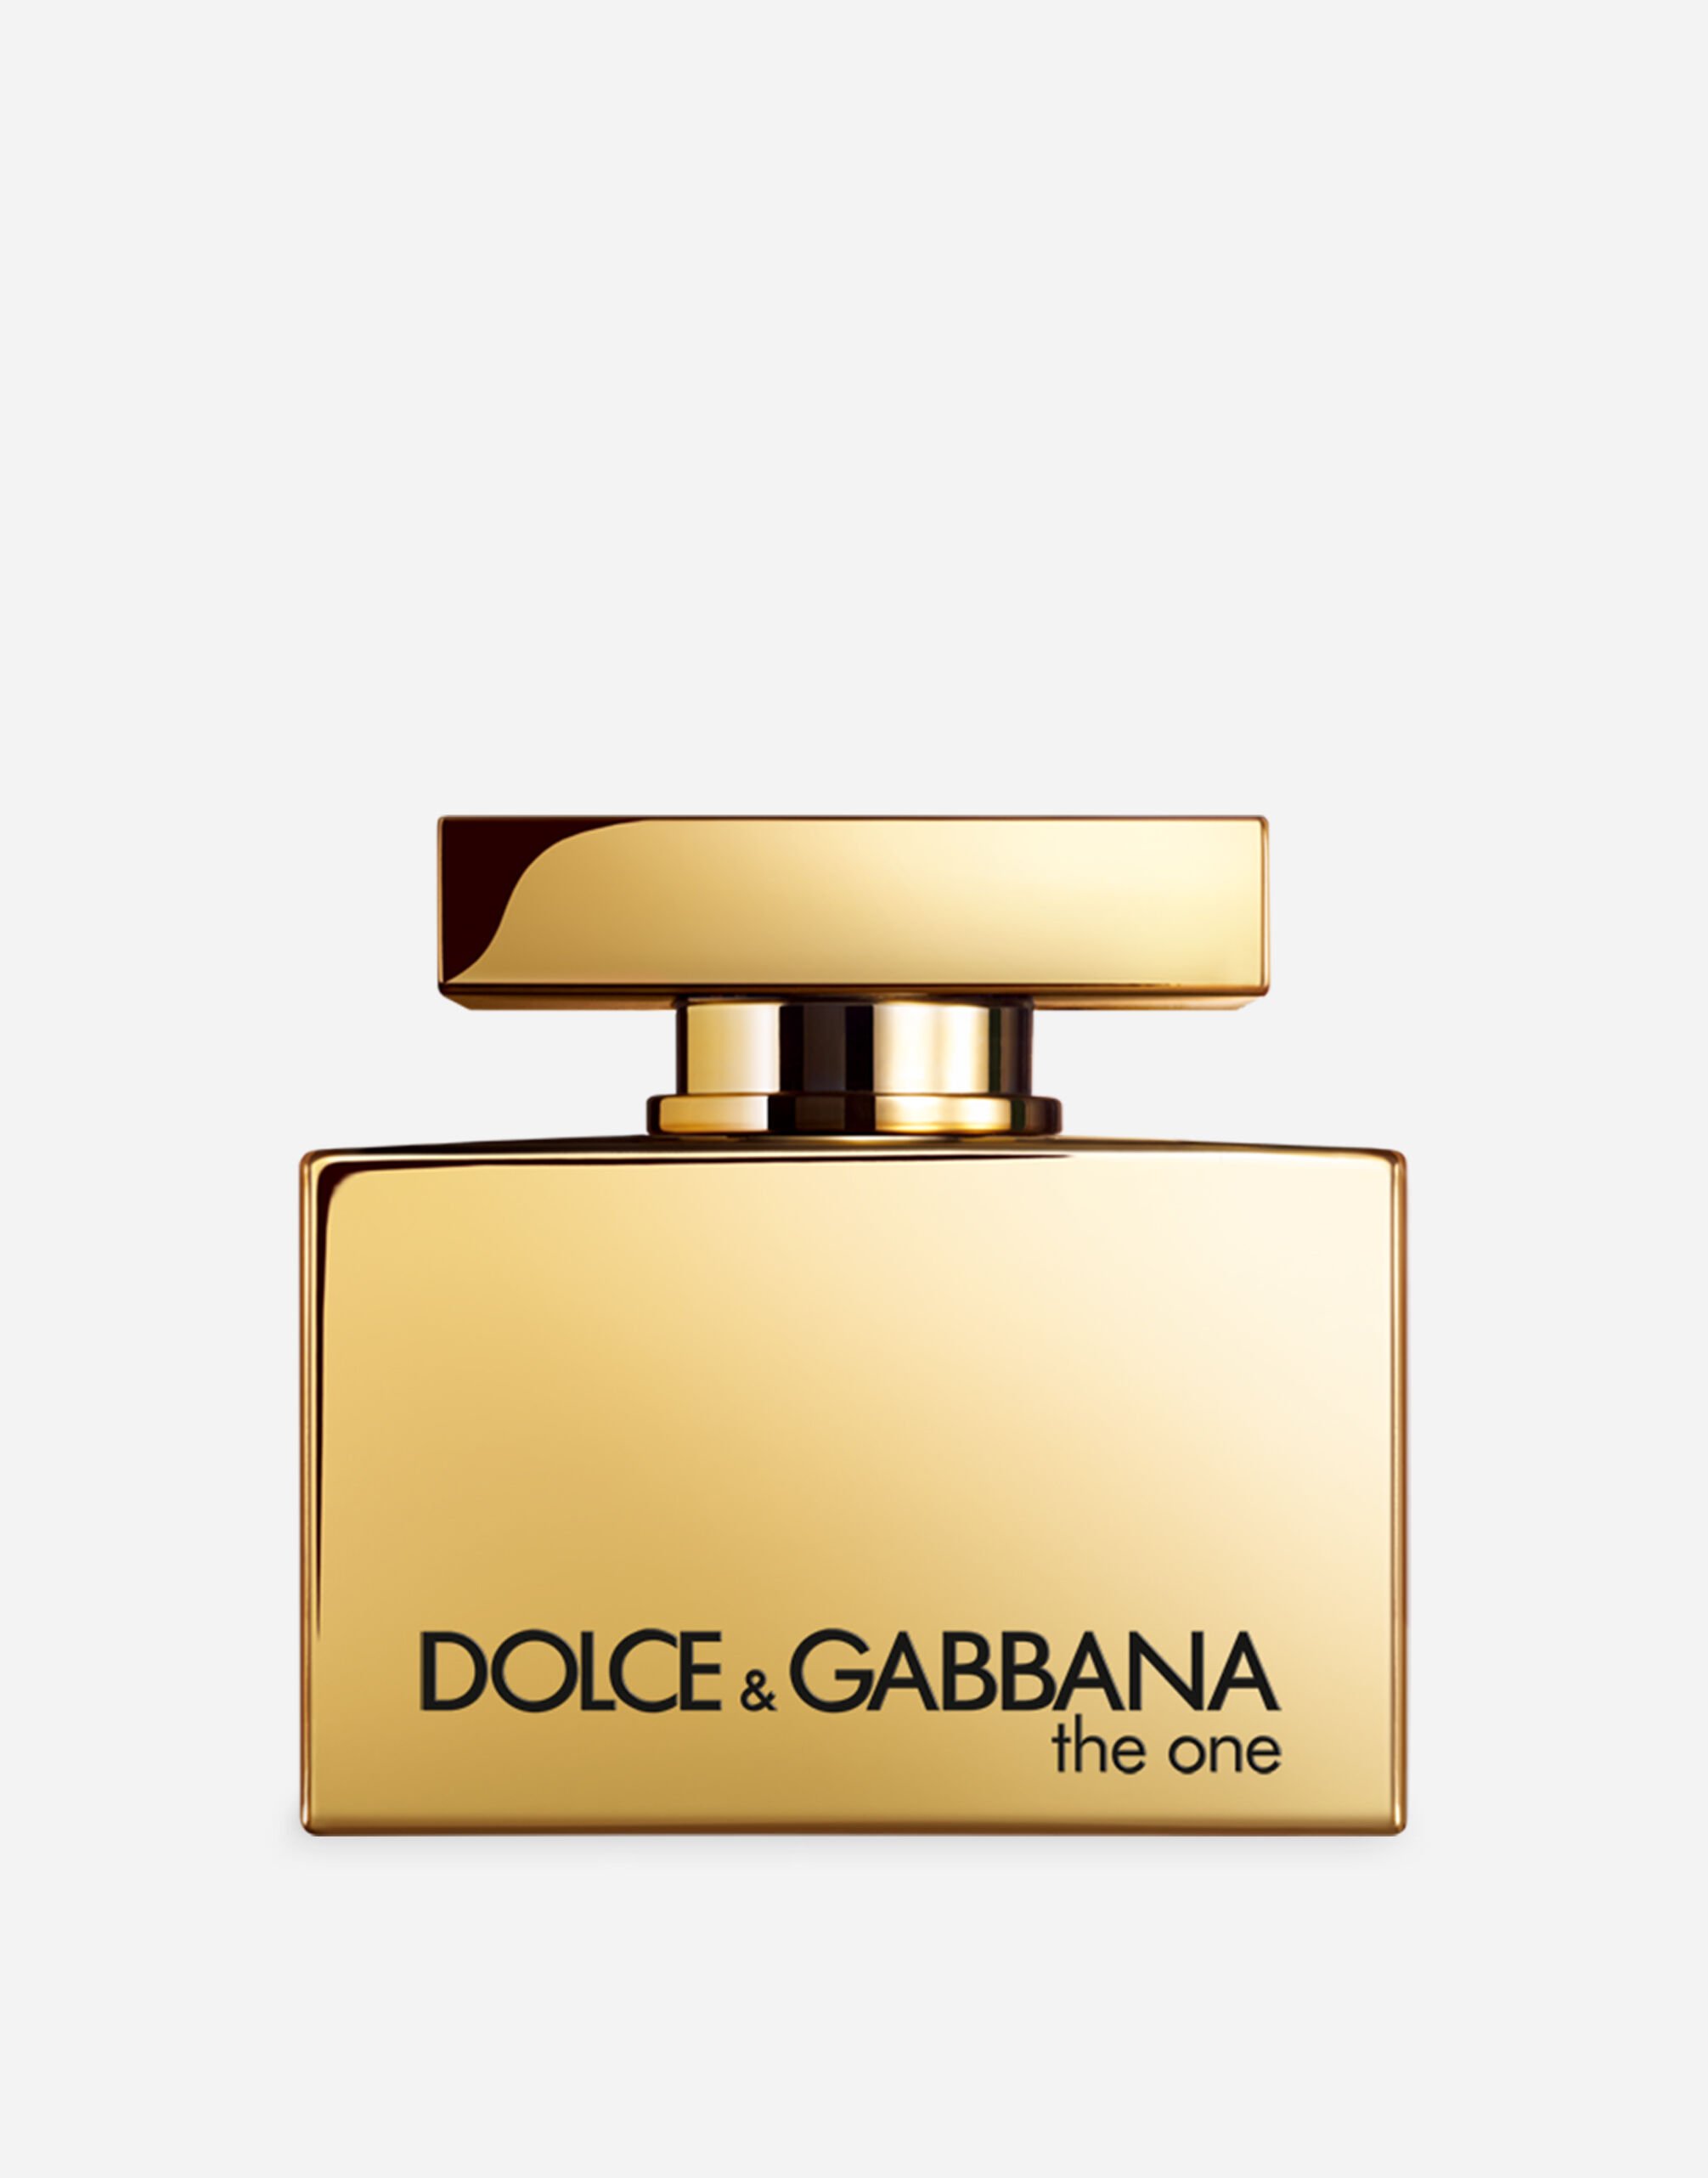 Dolce & Gabbana The One Gold Eau de Parfum Intense - VT0063VT000